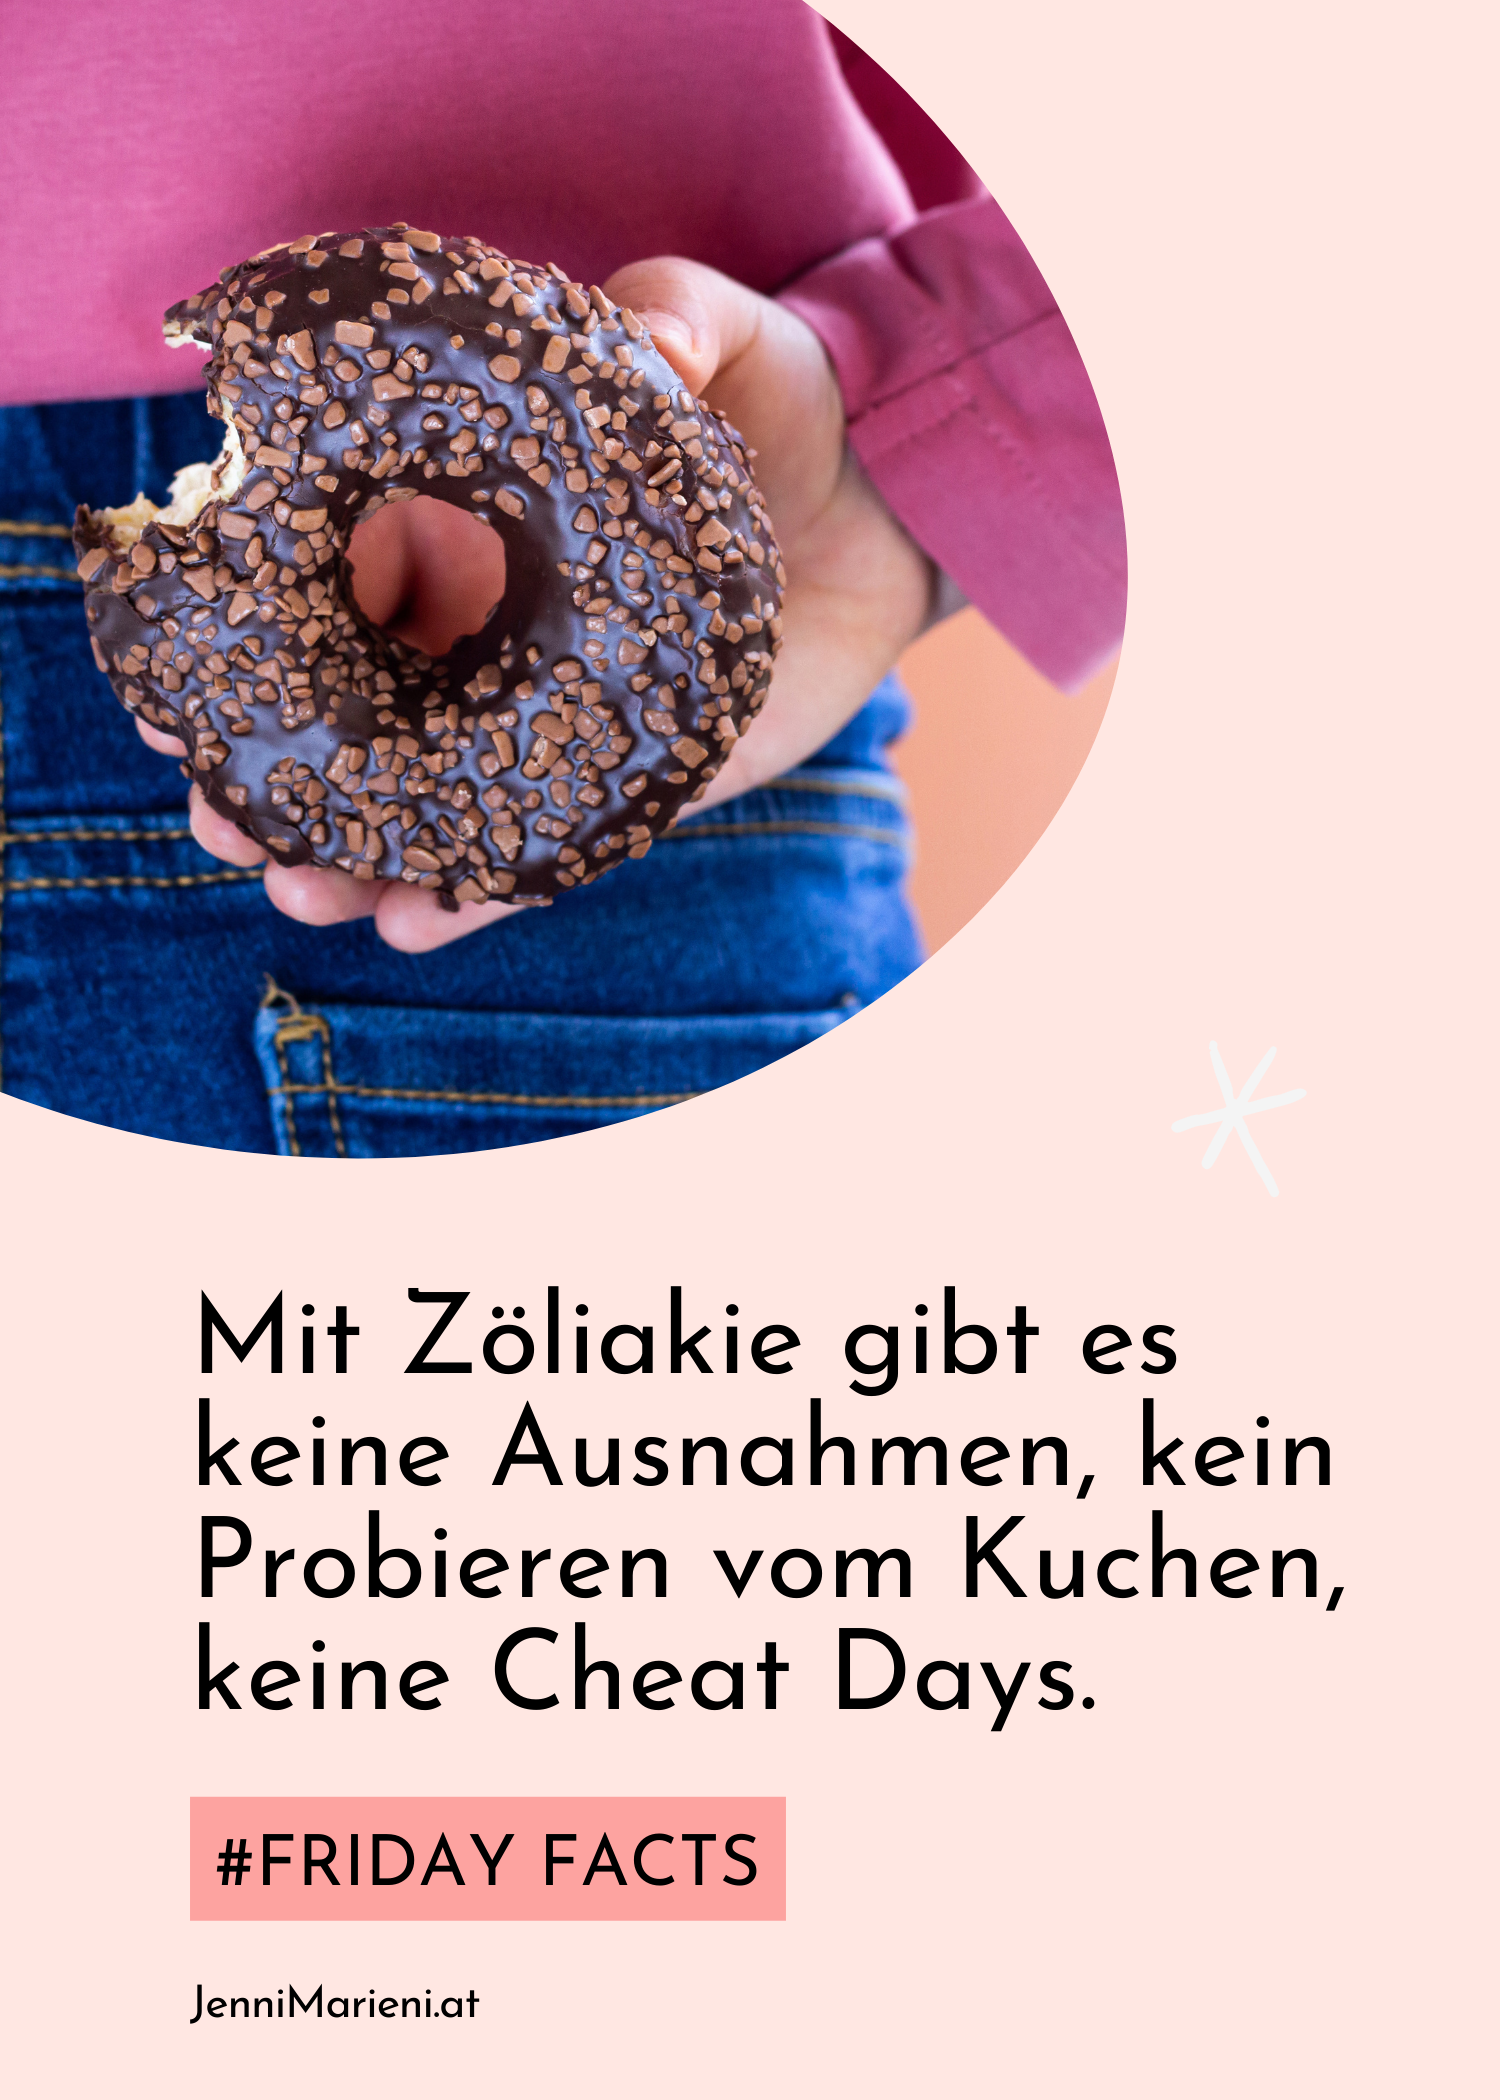 #FridayFacts: Mit Zöliakie gibt es keine Cheat Days!